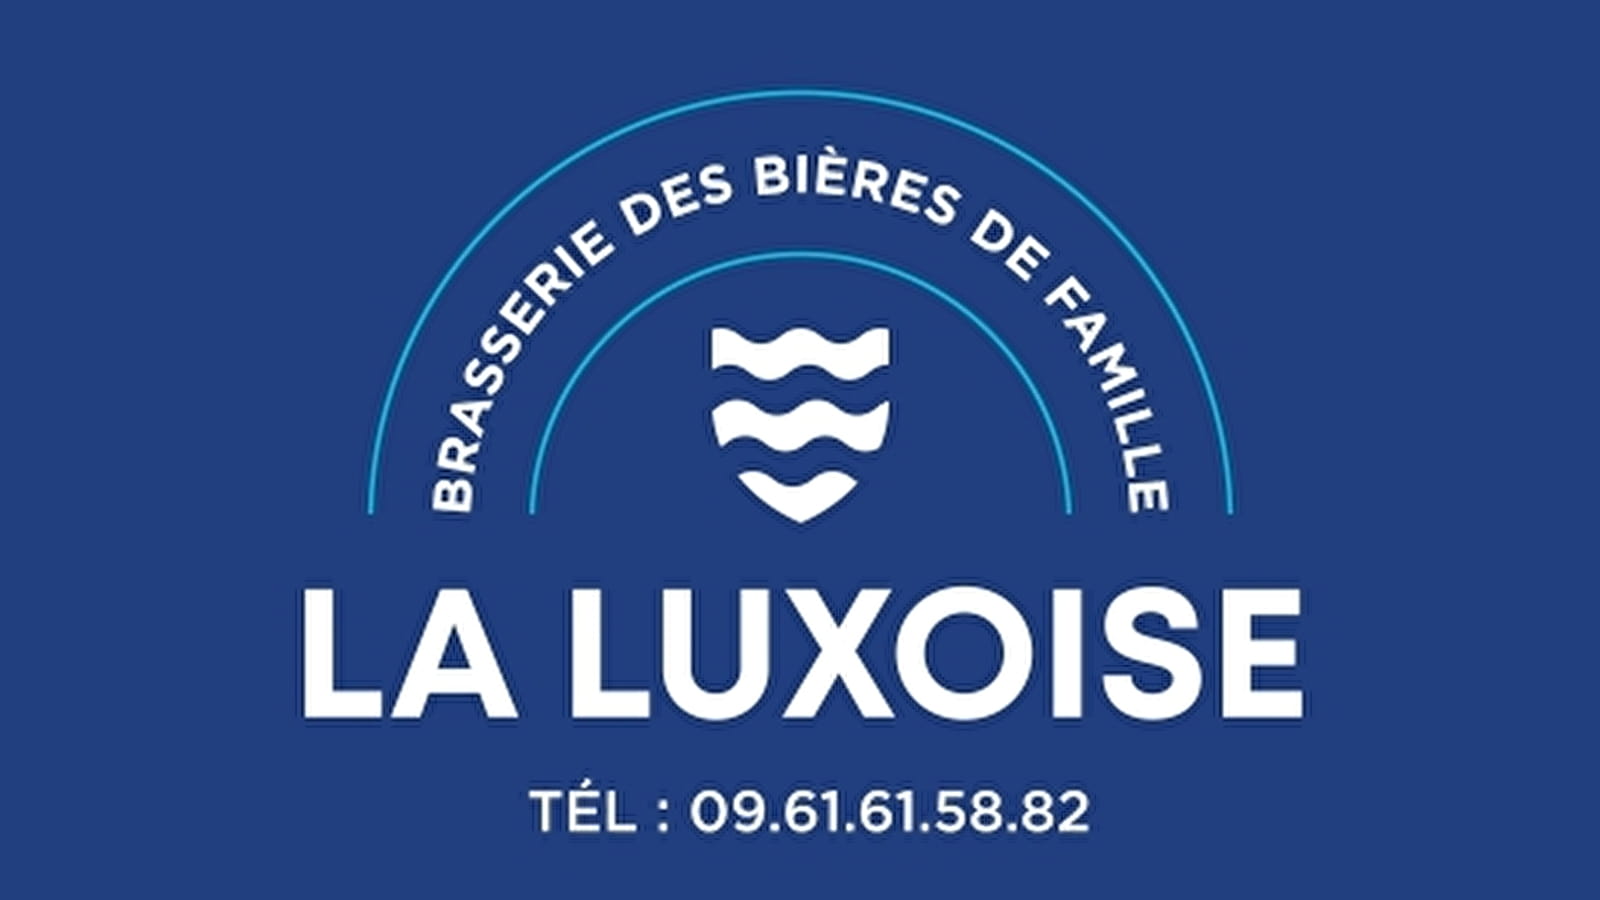 Brasserie des Bières de Famille “La Luxoise”